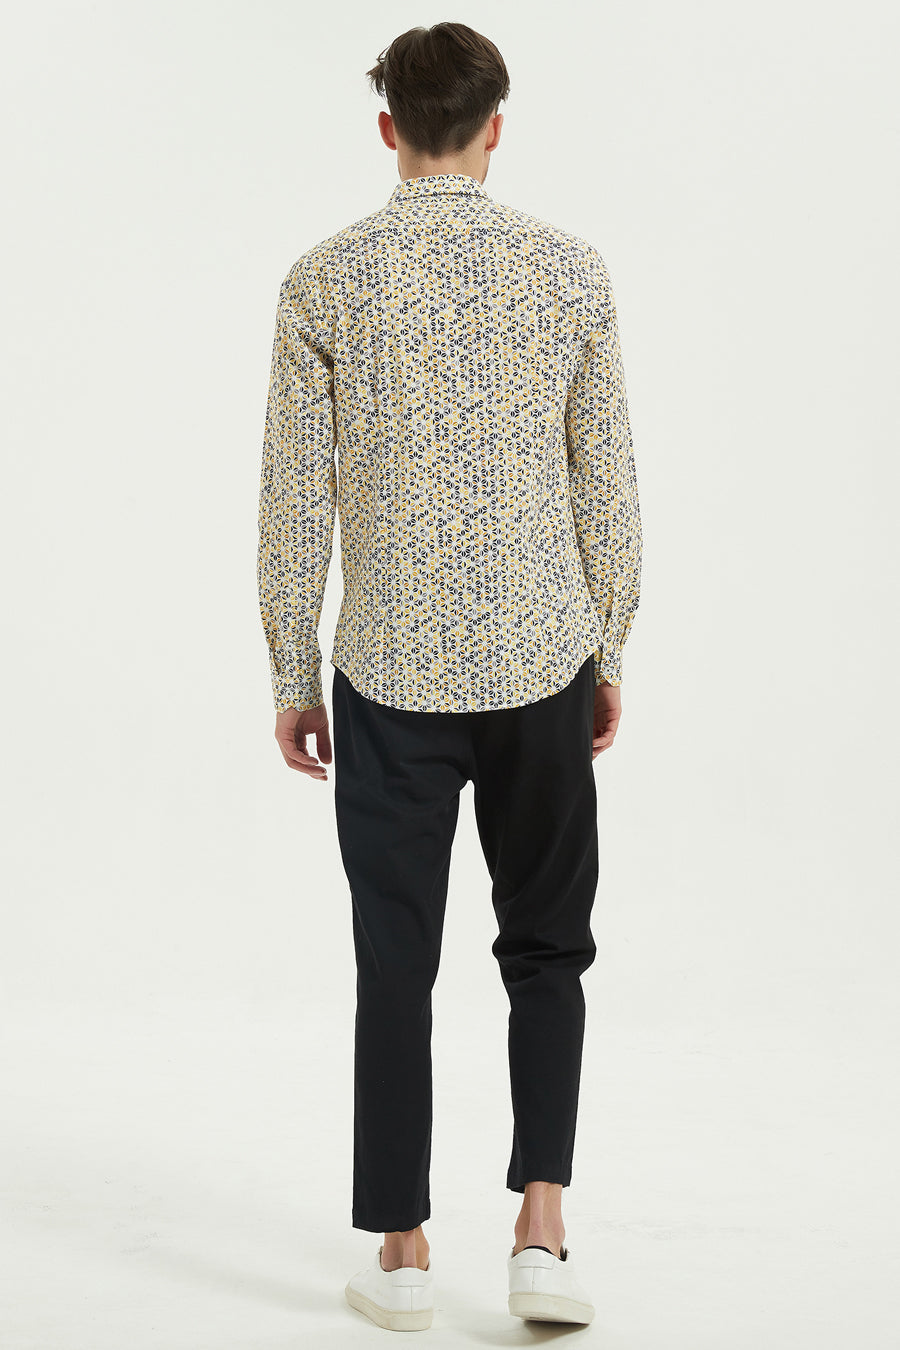 Ανδρικό πουκάμισο Terrell, Μαύρο/Κίτρινο 3